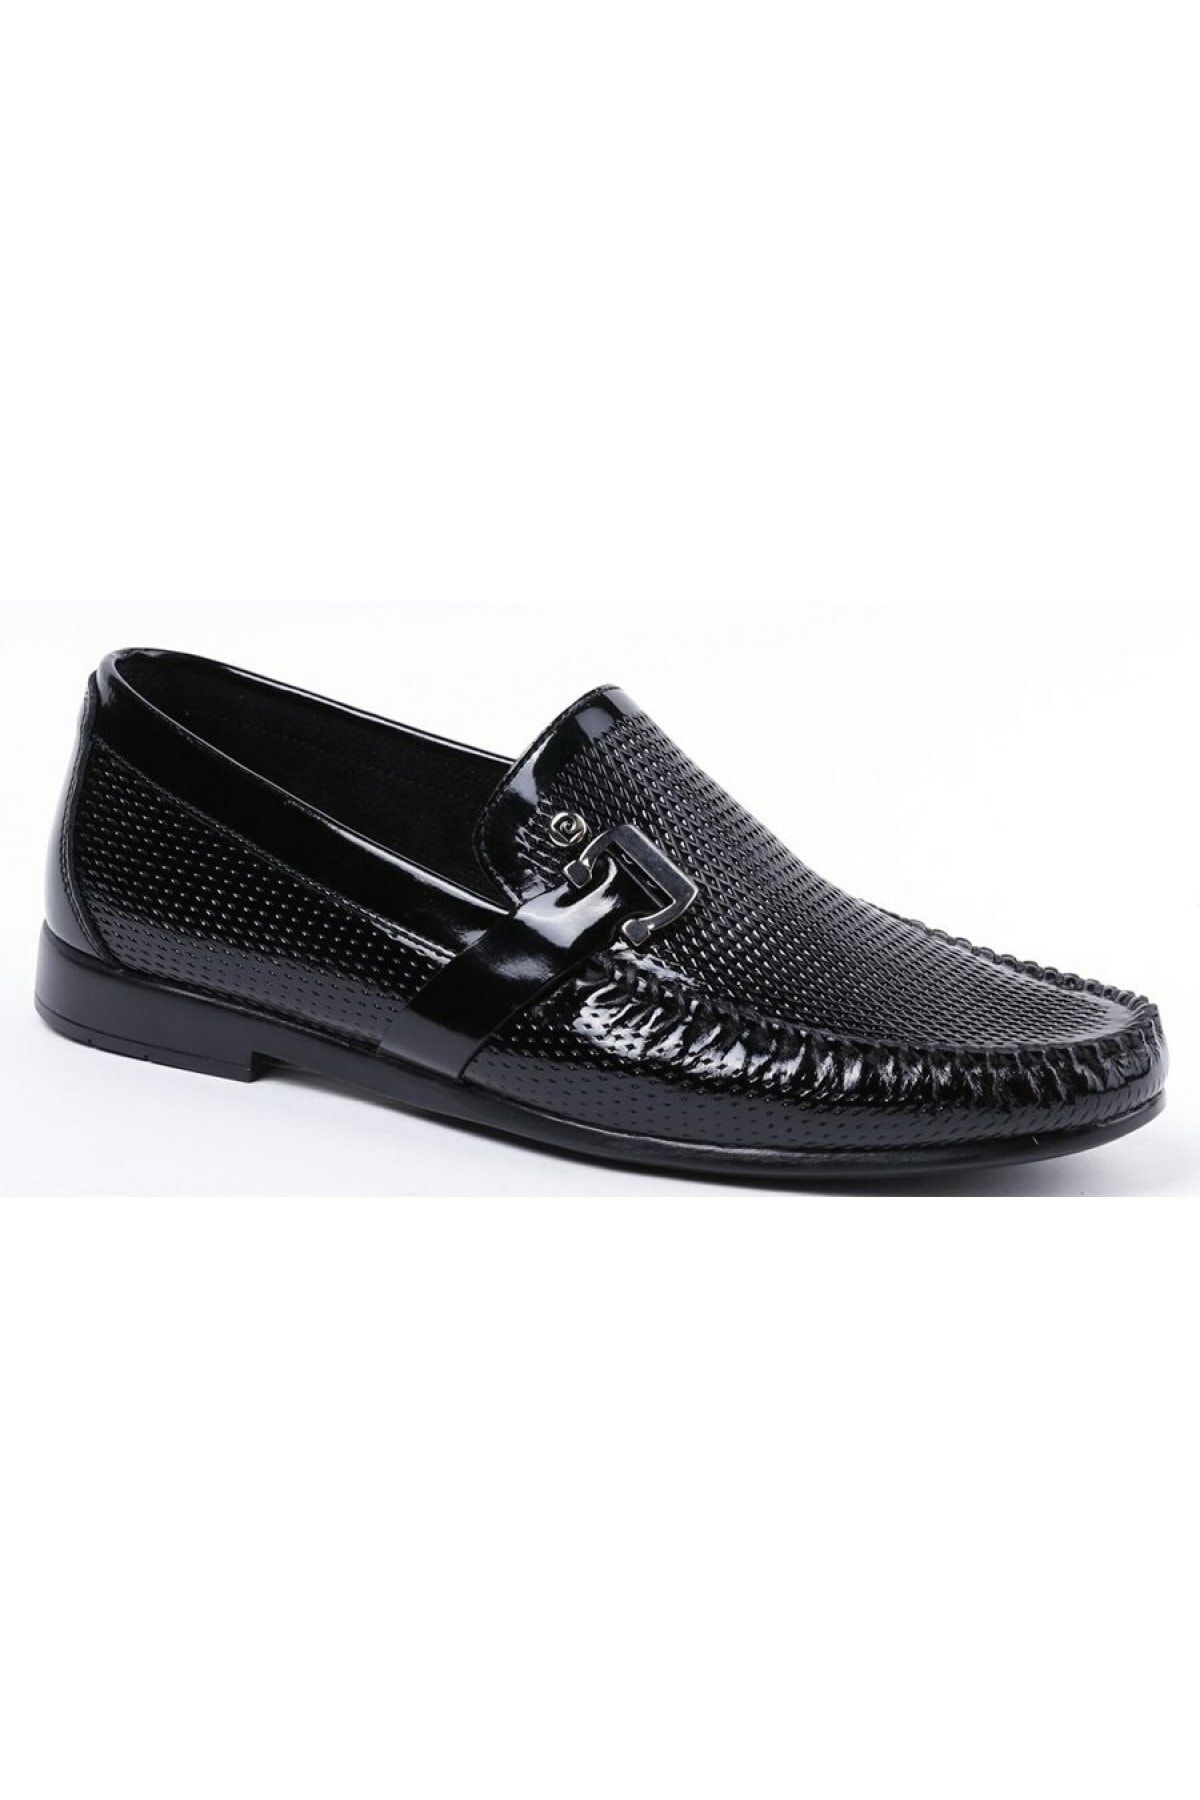 Pierre Cardin 2598 Siyah Rugan Erkek Loafer Günlük Deri Ayakkabı